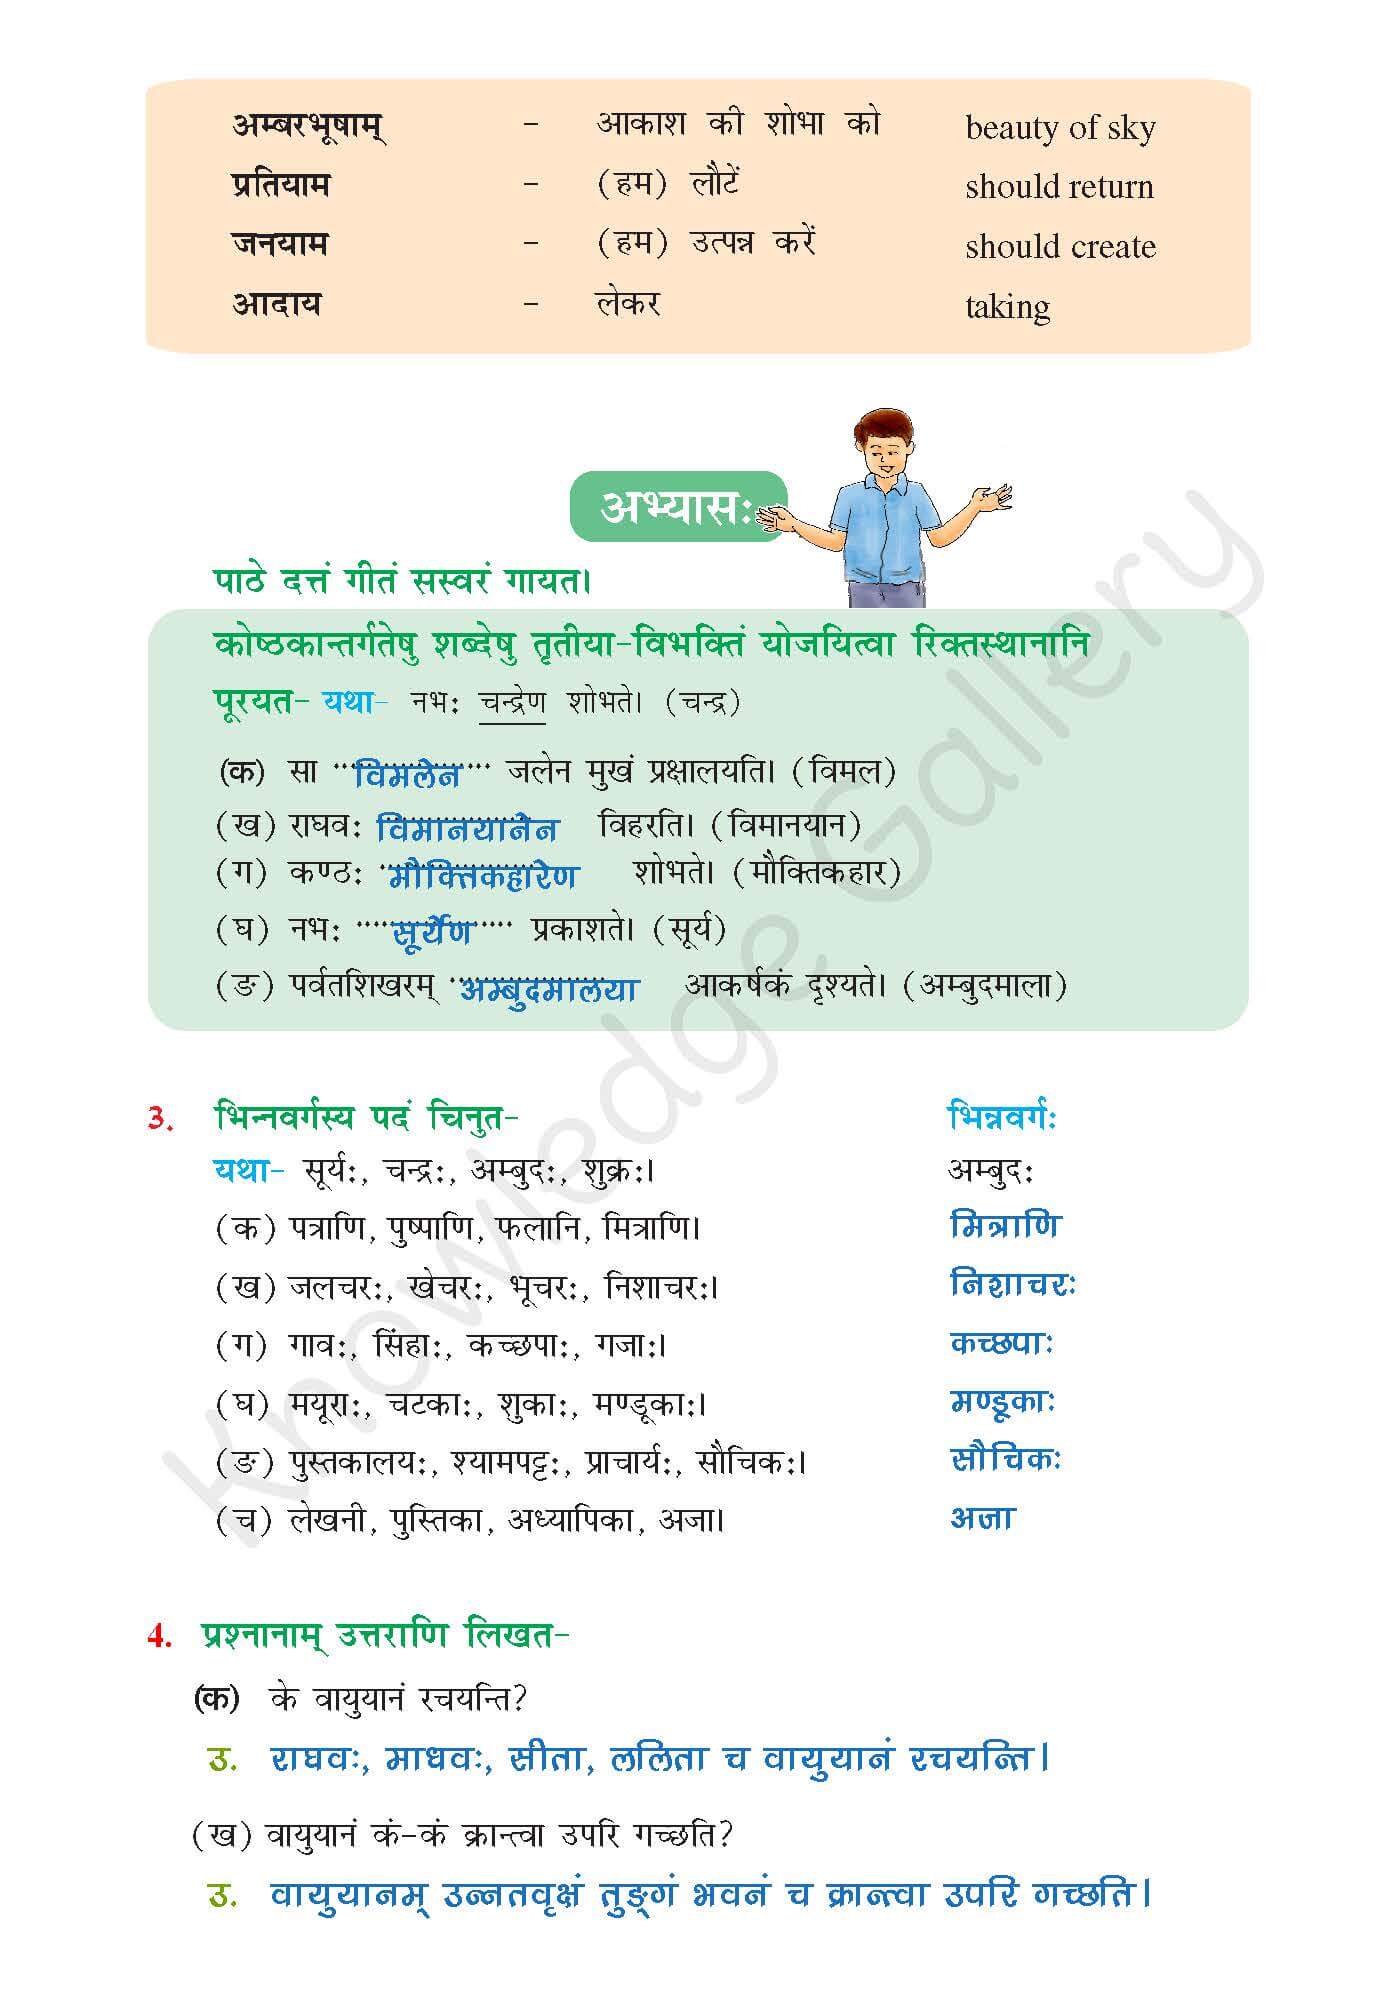 NCERT Solution For Class 6 Sanskrit Chapter 12 part 3